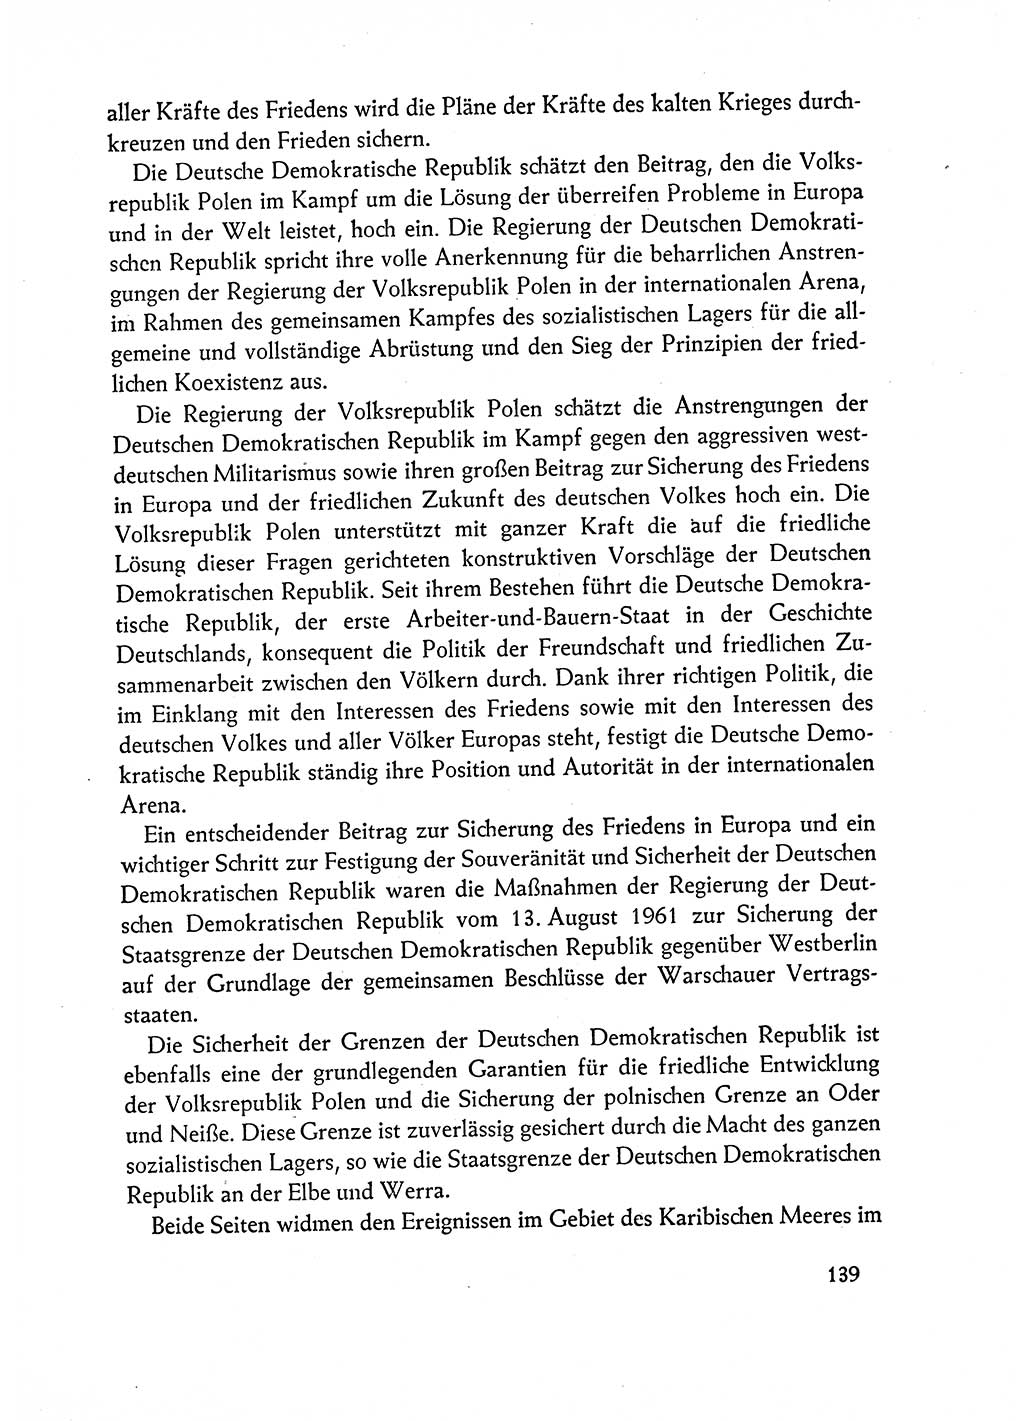 Dokumente der Sozialistischen Einheitspartei Deutschlands (SED) [Deutsche Demokratische Republik (DDR)] 1962-1963, Seite 139 (Dok. SED DDR 1962-1963, S. 139)